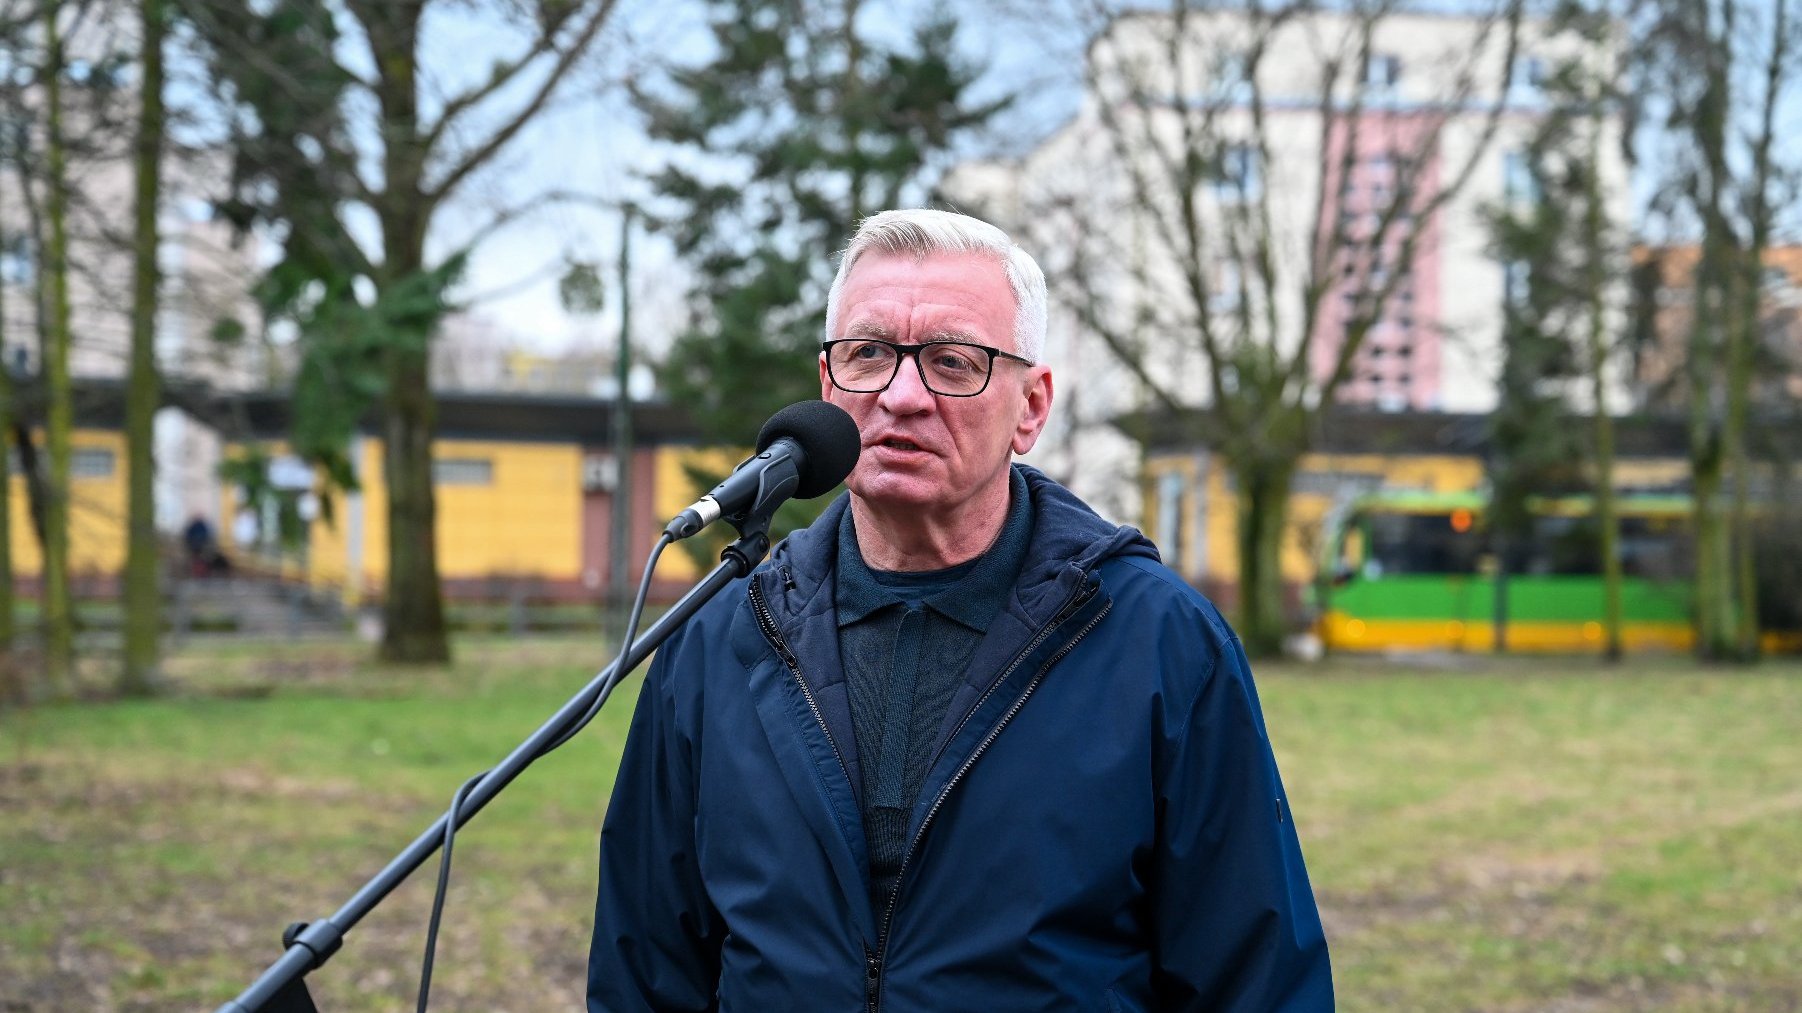 Na zdjeciu prezydent Poznania przy mikrofonie, na pętli Ogrody